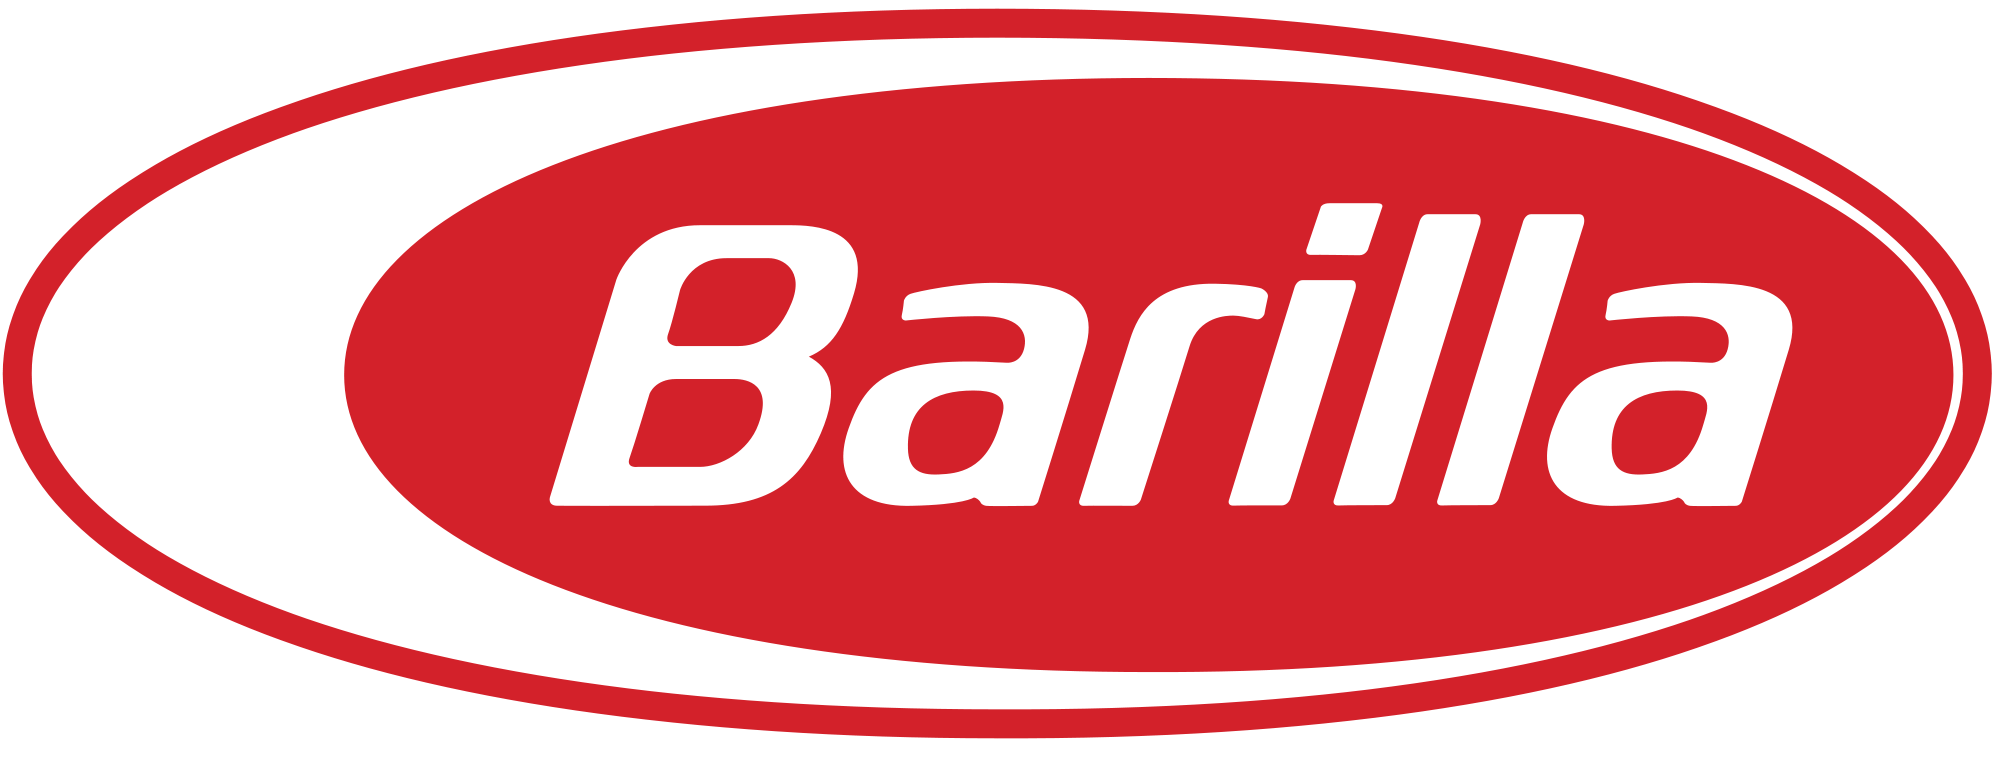 Barilla Logo - Barilla pasta logo.svg